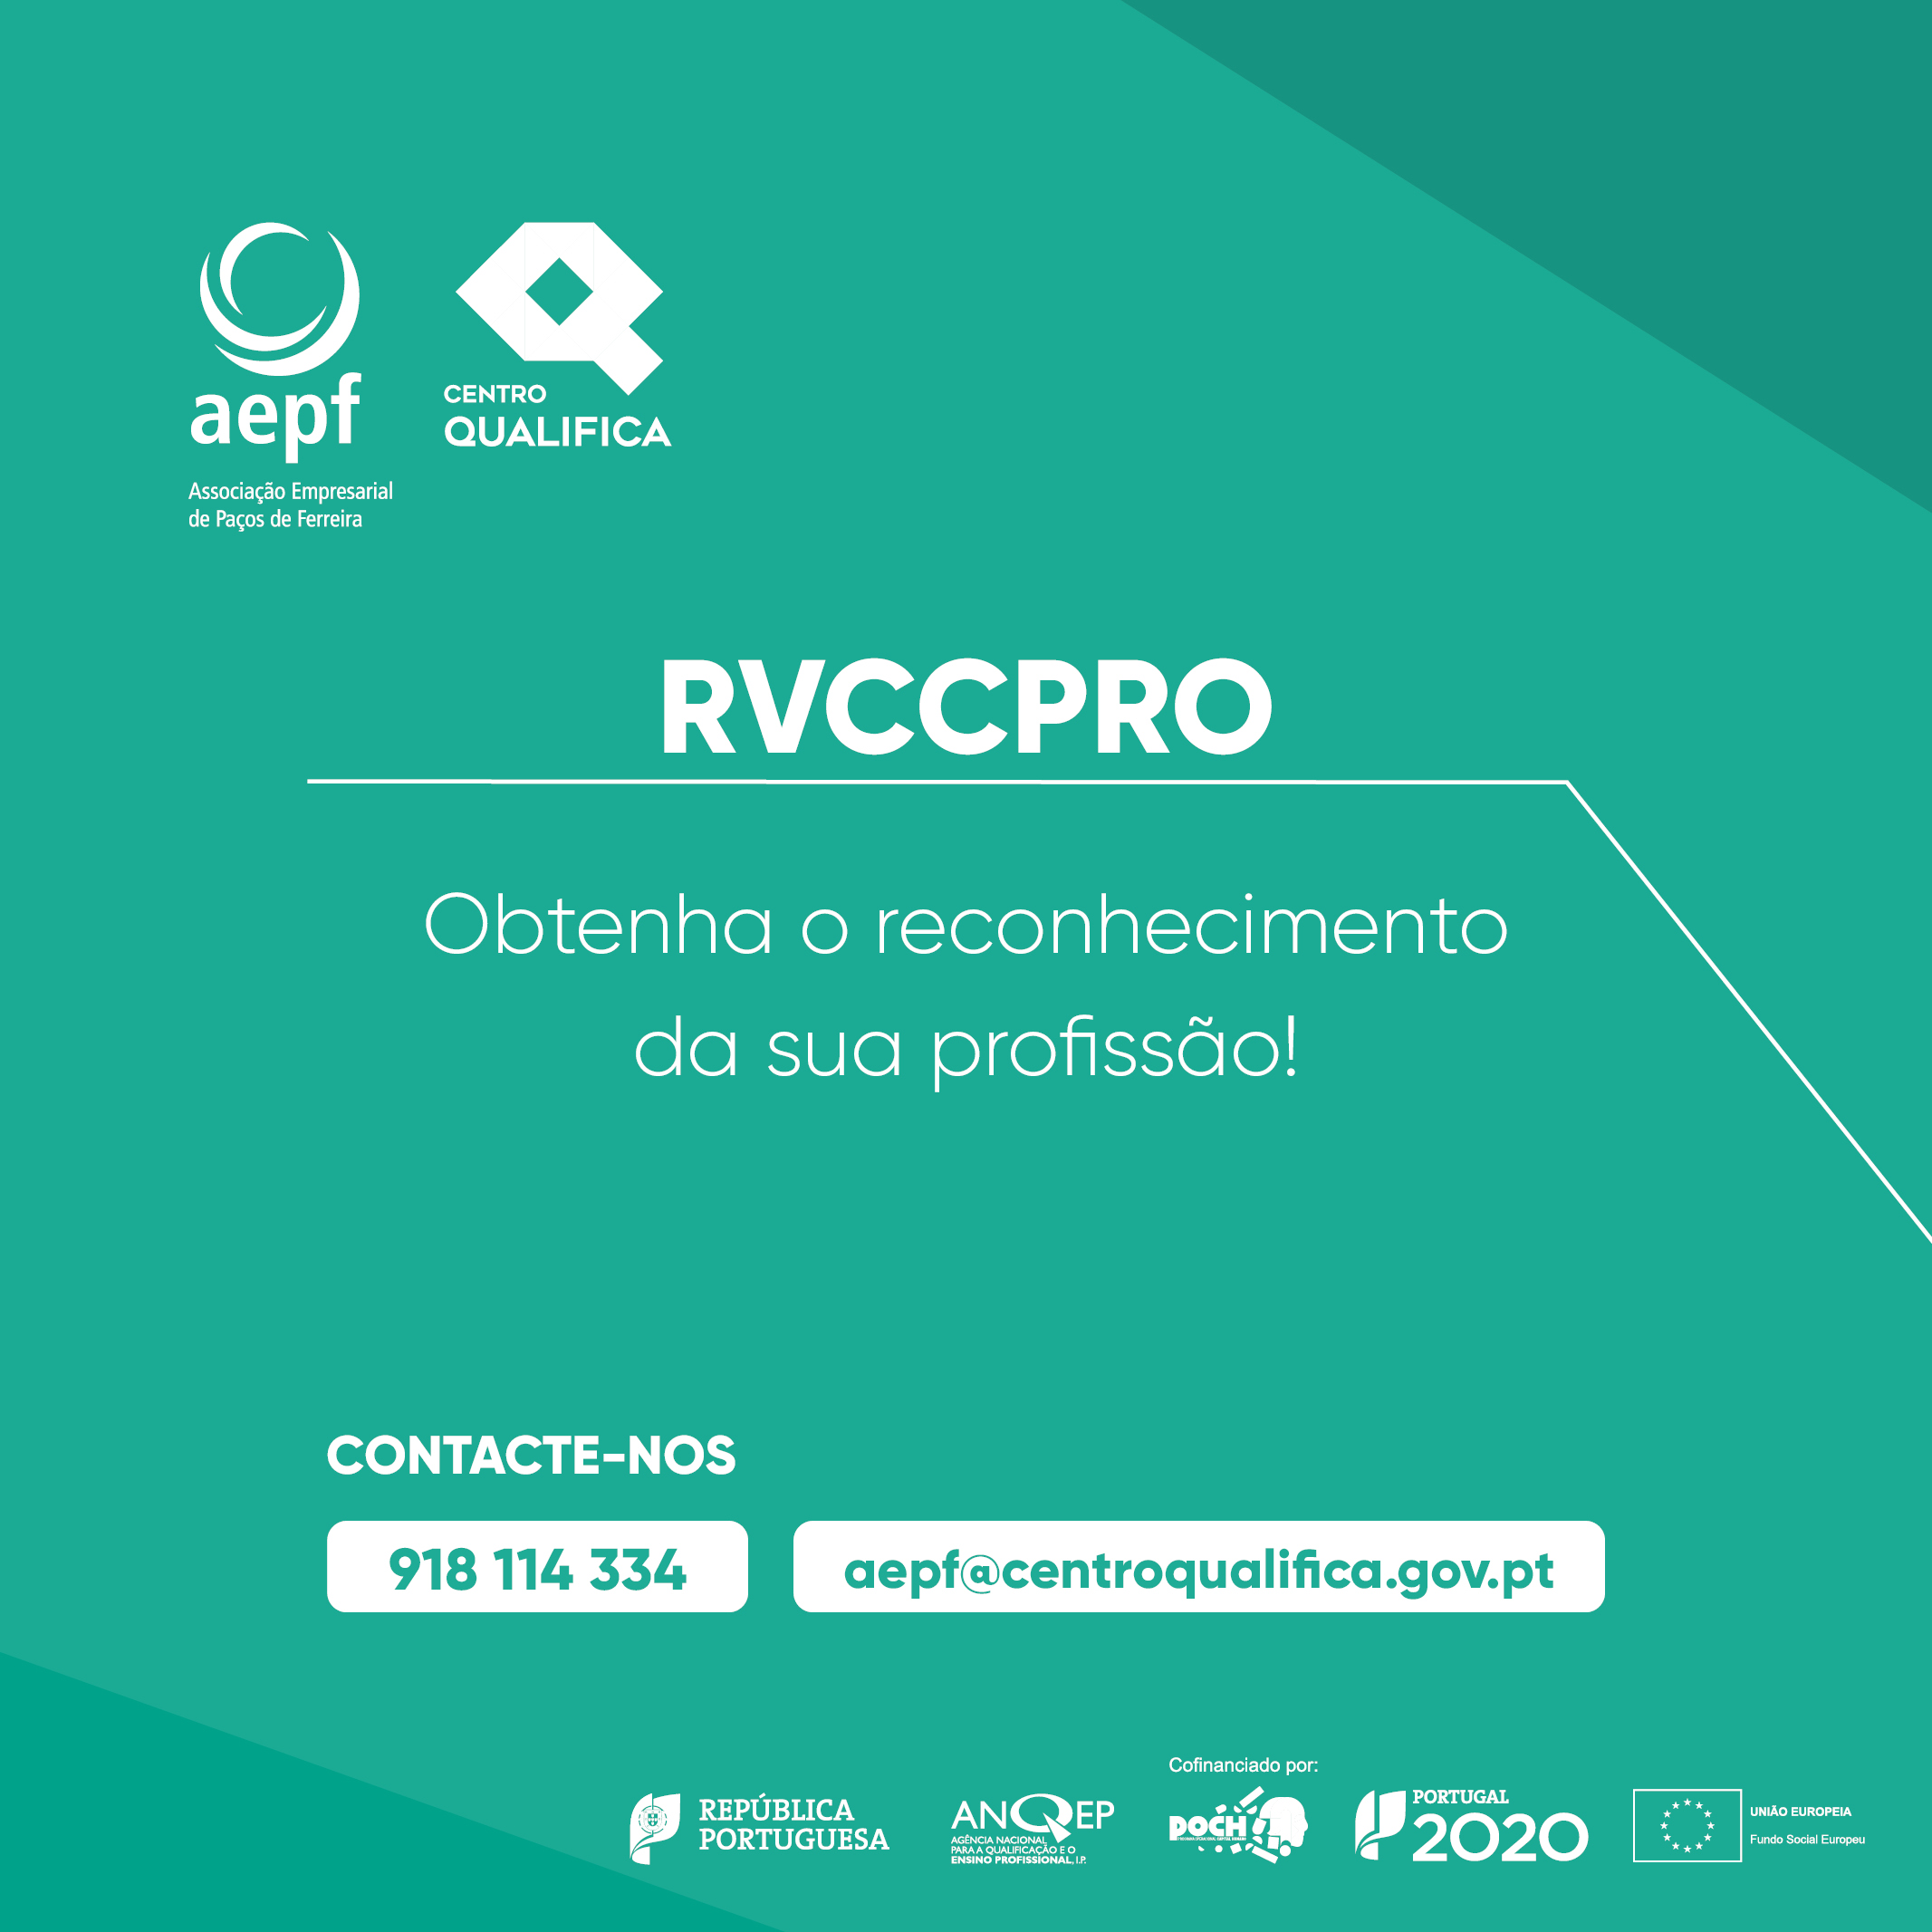 RVCC: Reconhecimento, Validação e Certificação de Competências Profissionais